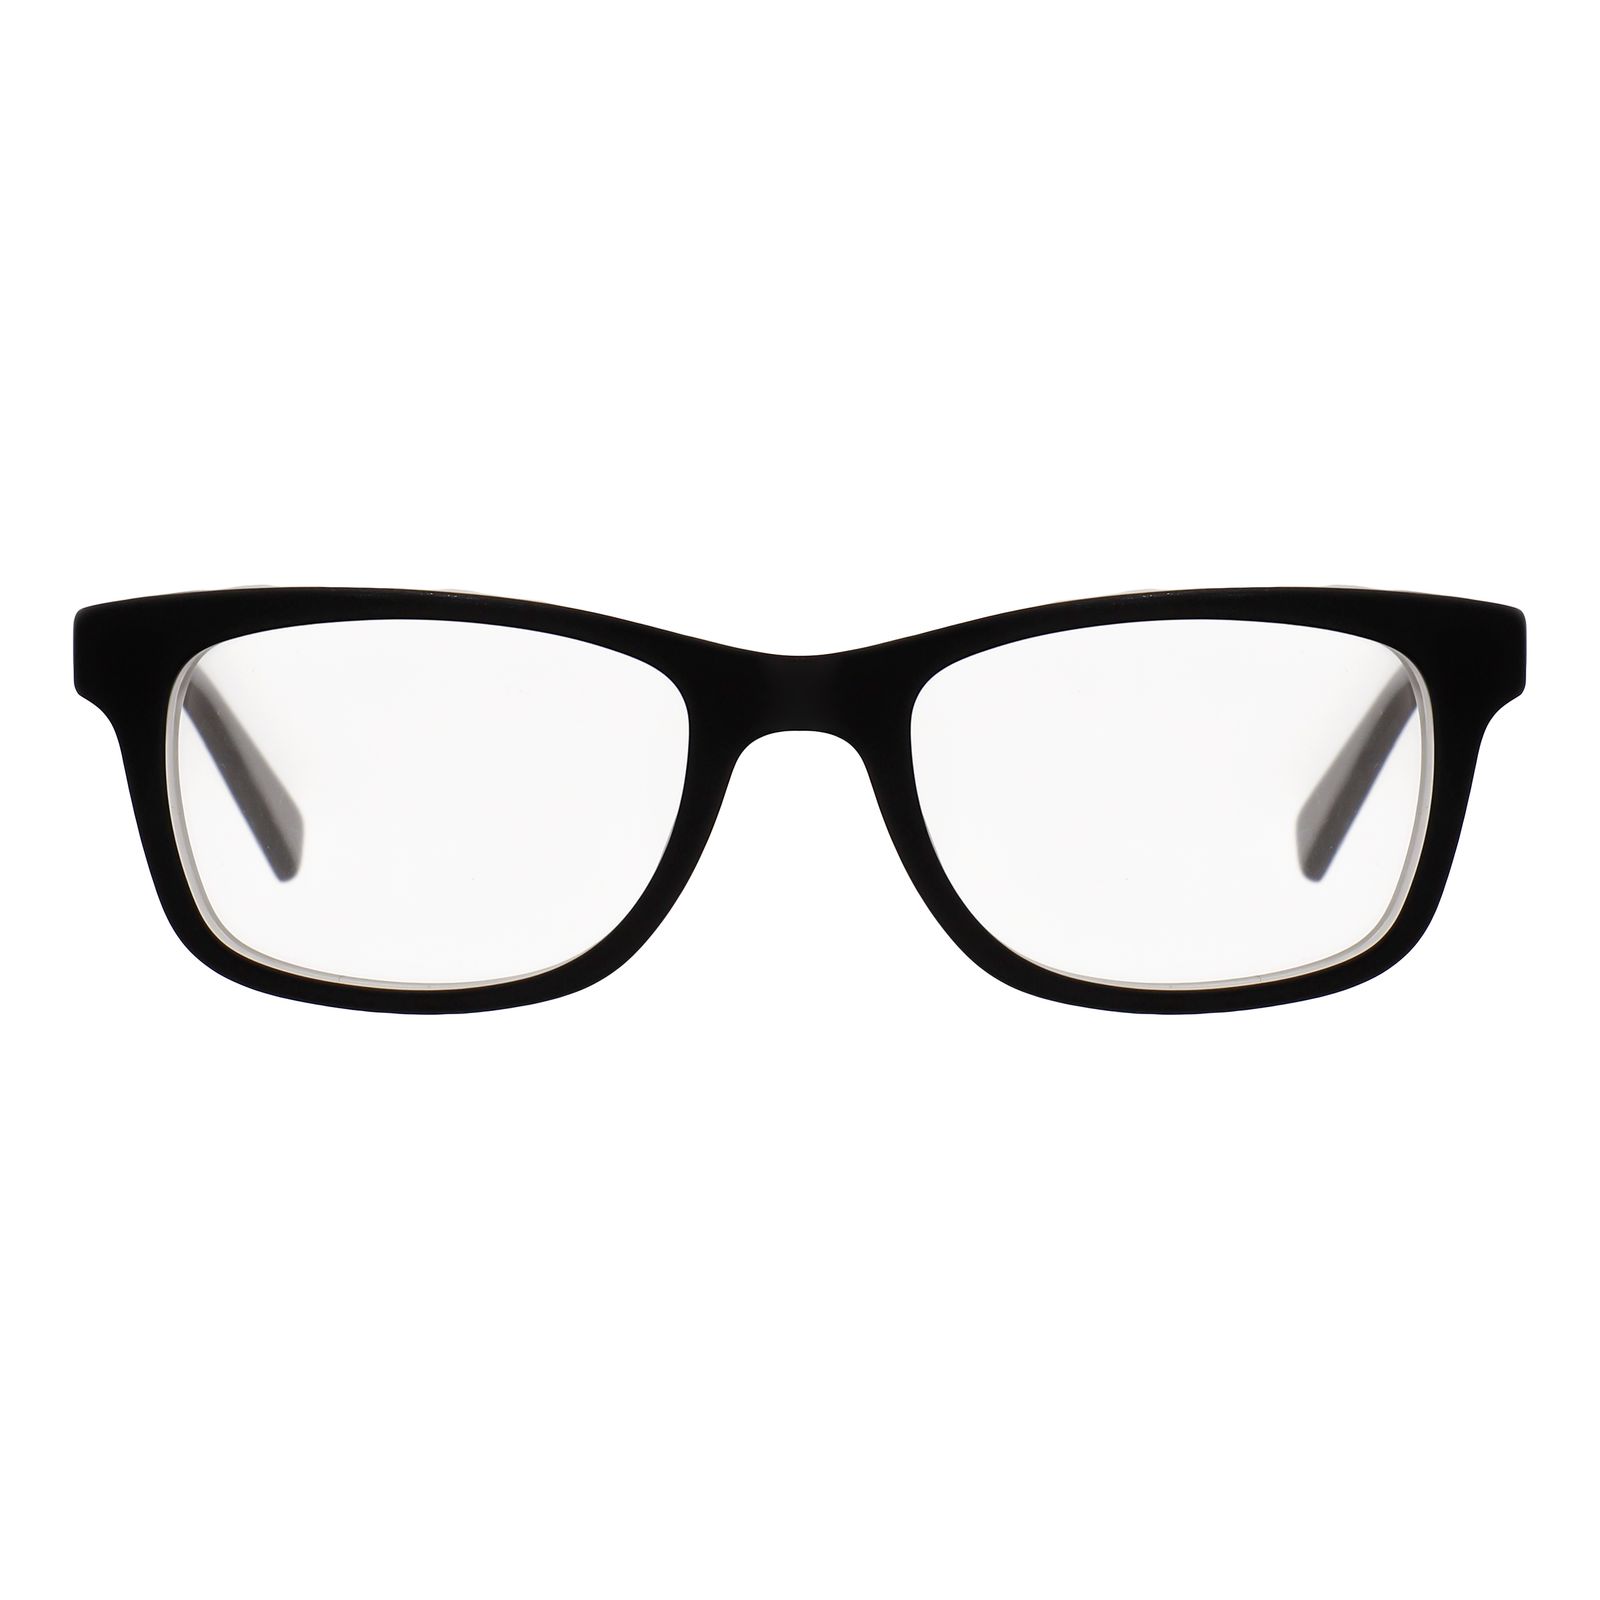 فریم عینک طبی نایک مدل 5509-18 -  - 1